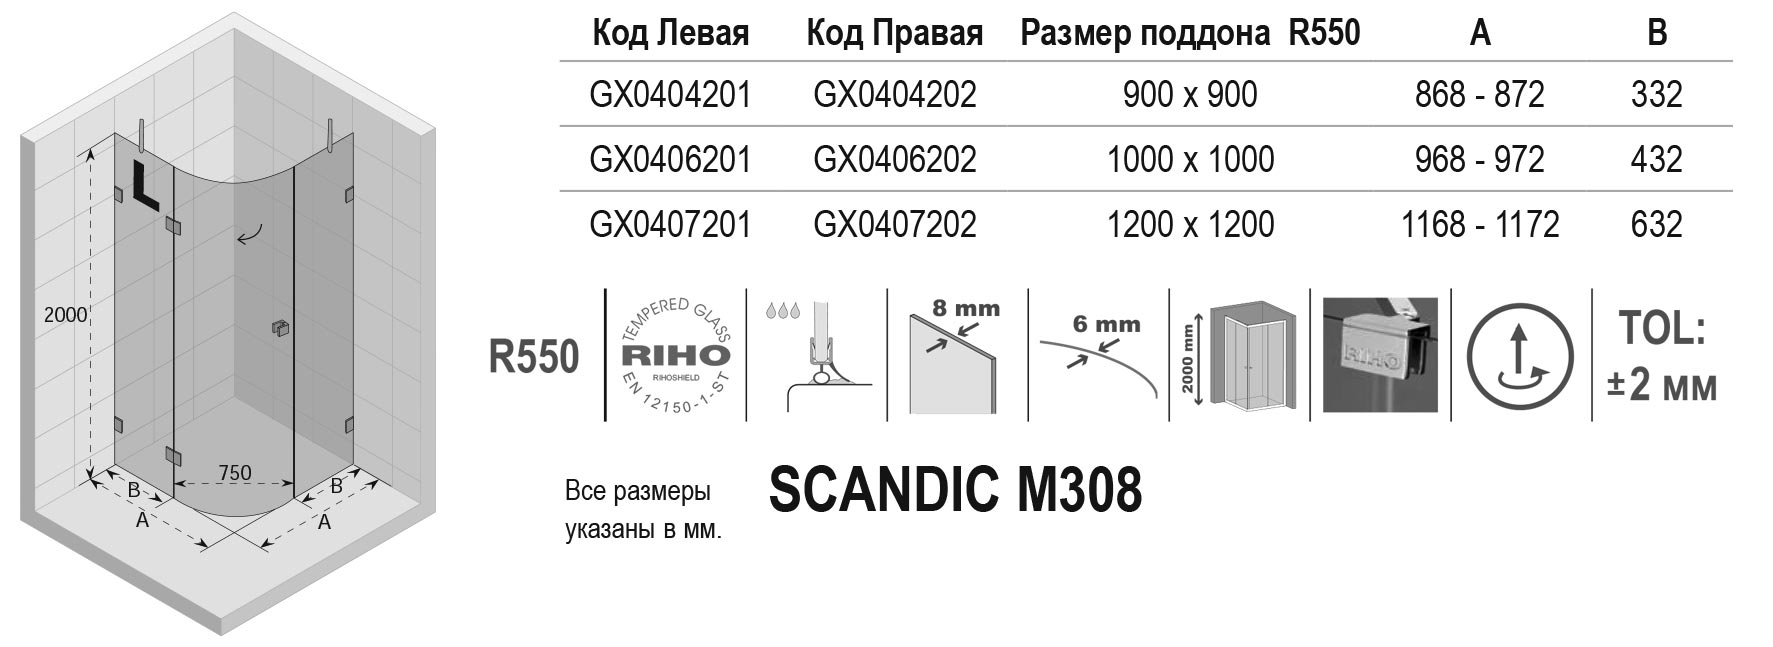 Чертёж Riho Scandic M308 GX0407202